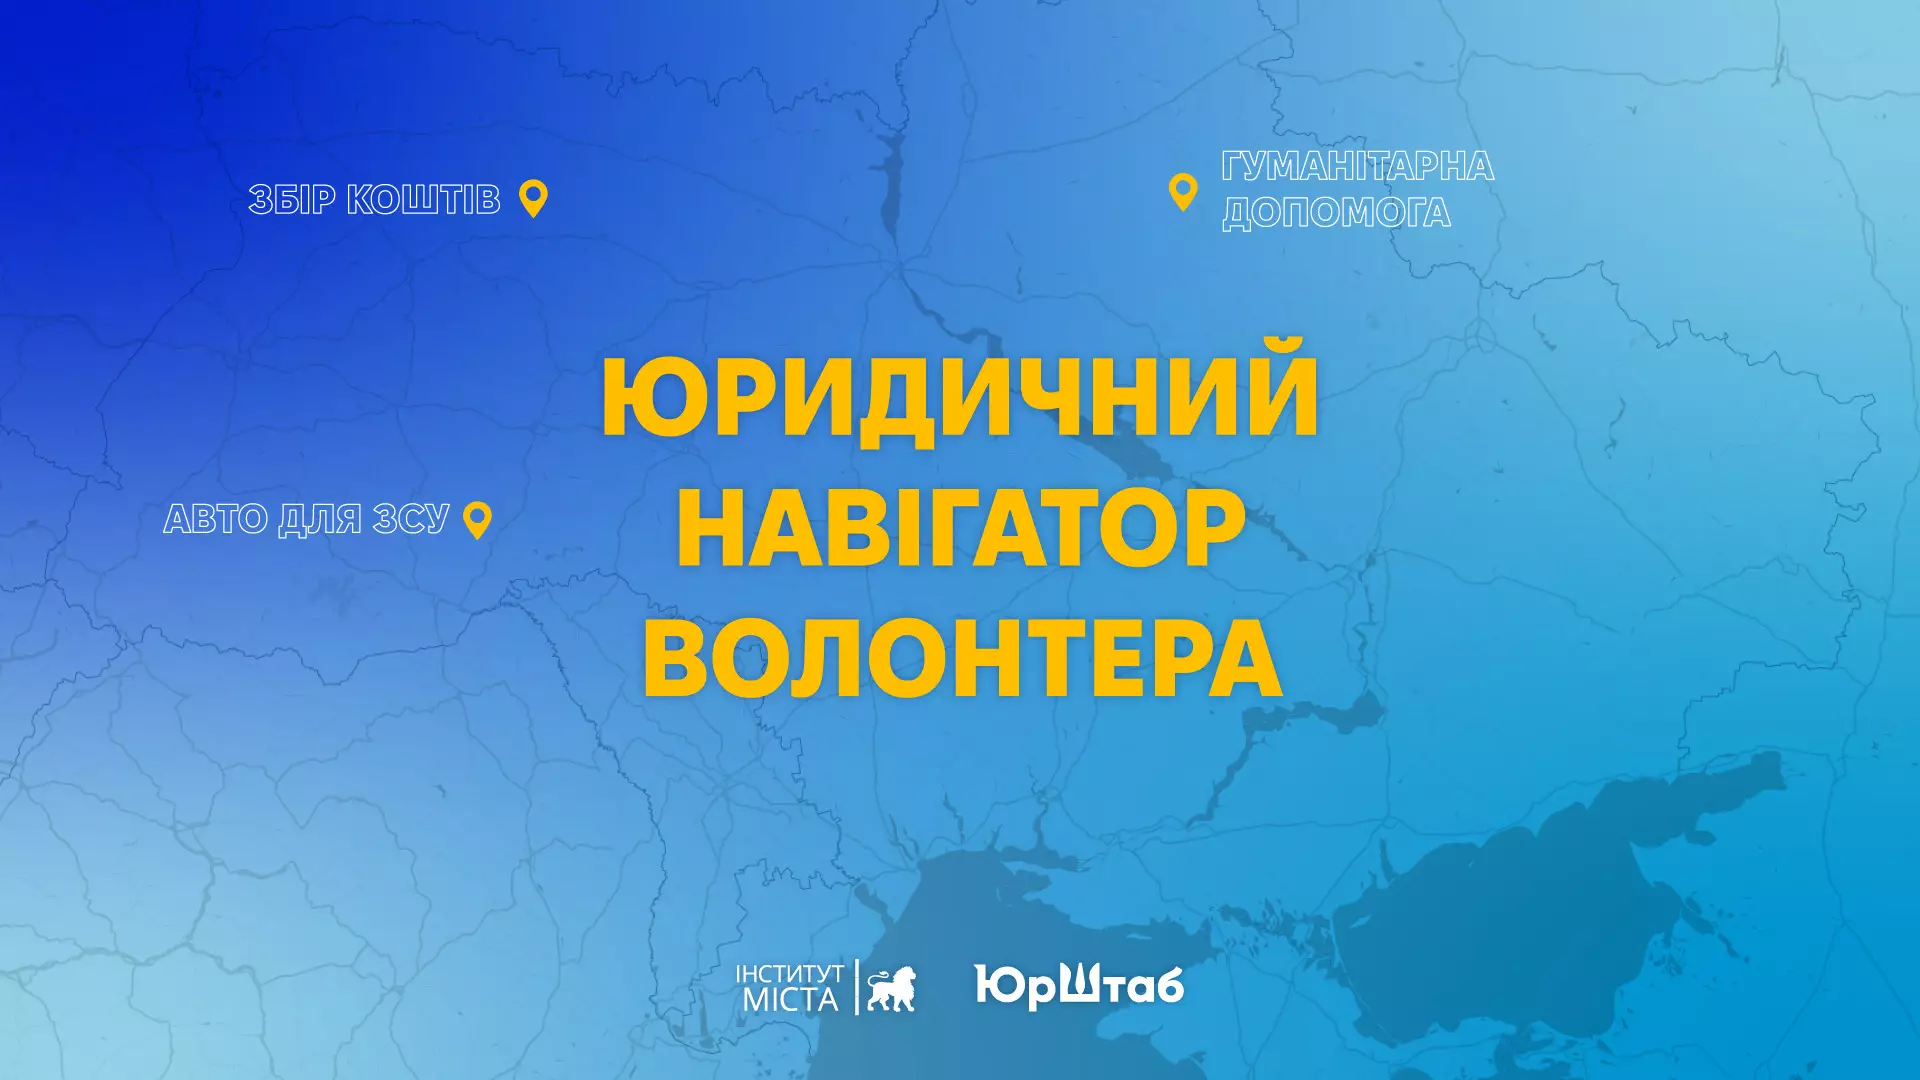 В Україні запустити юридичну платформу для волонтерів і громадських організацій